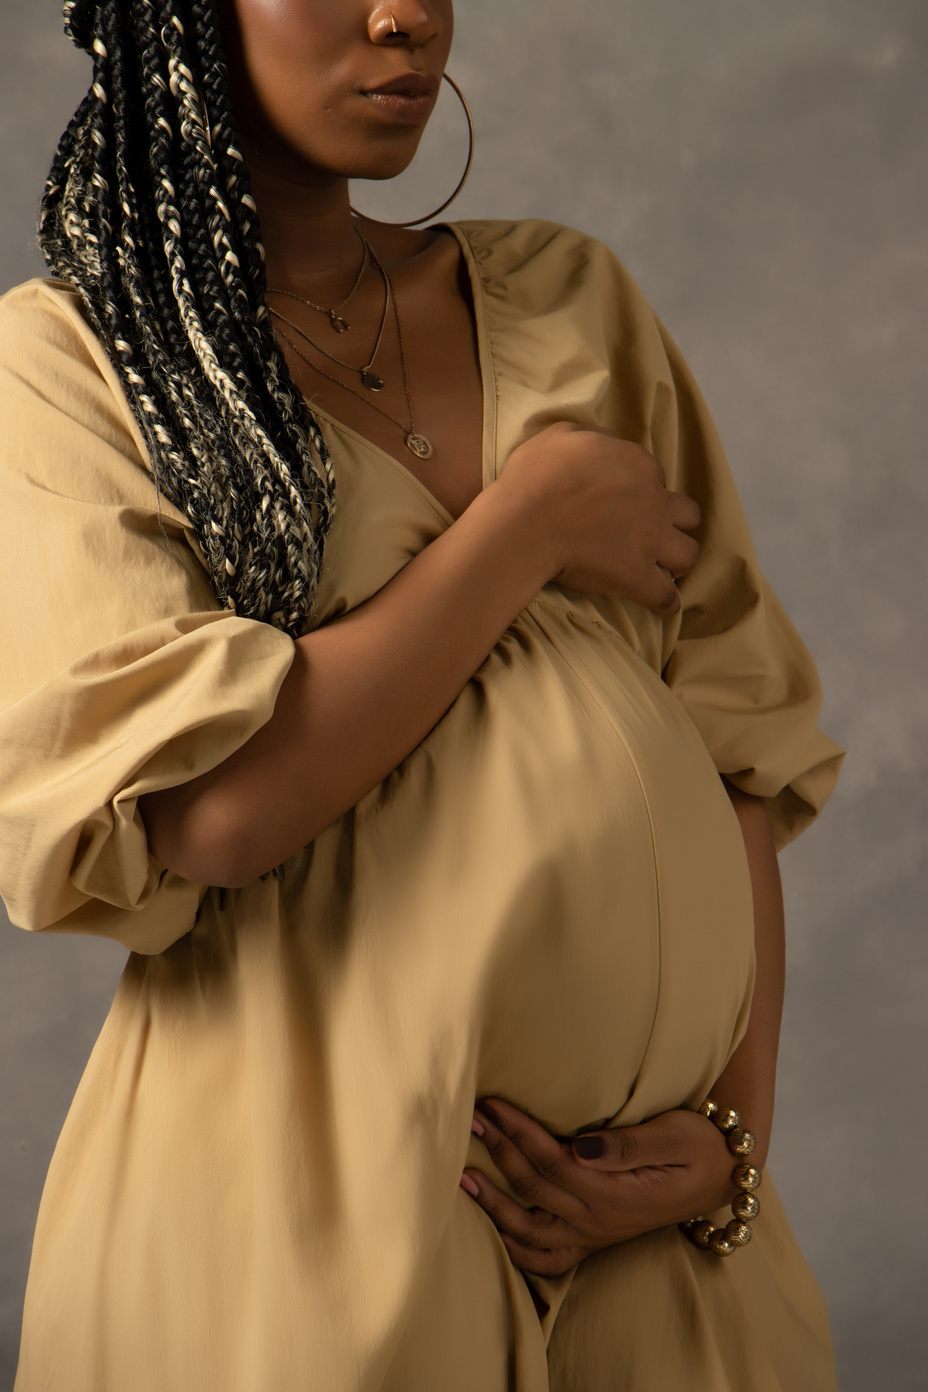 Portrait of Pregnant Woman